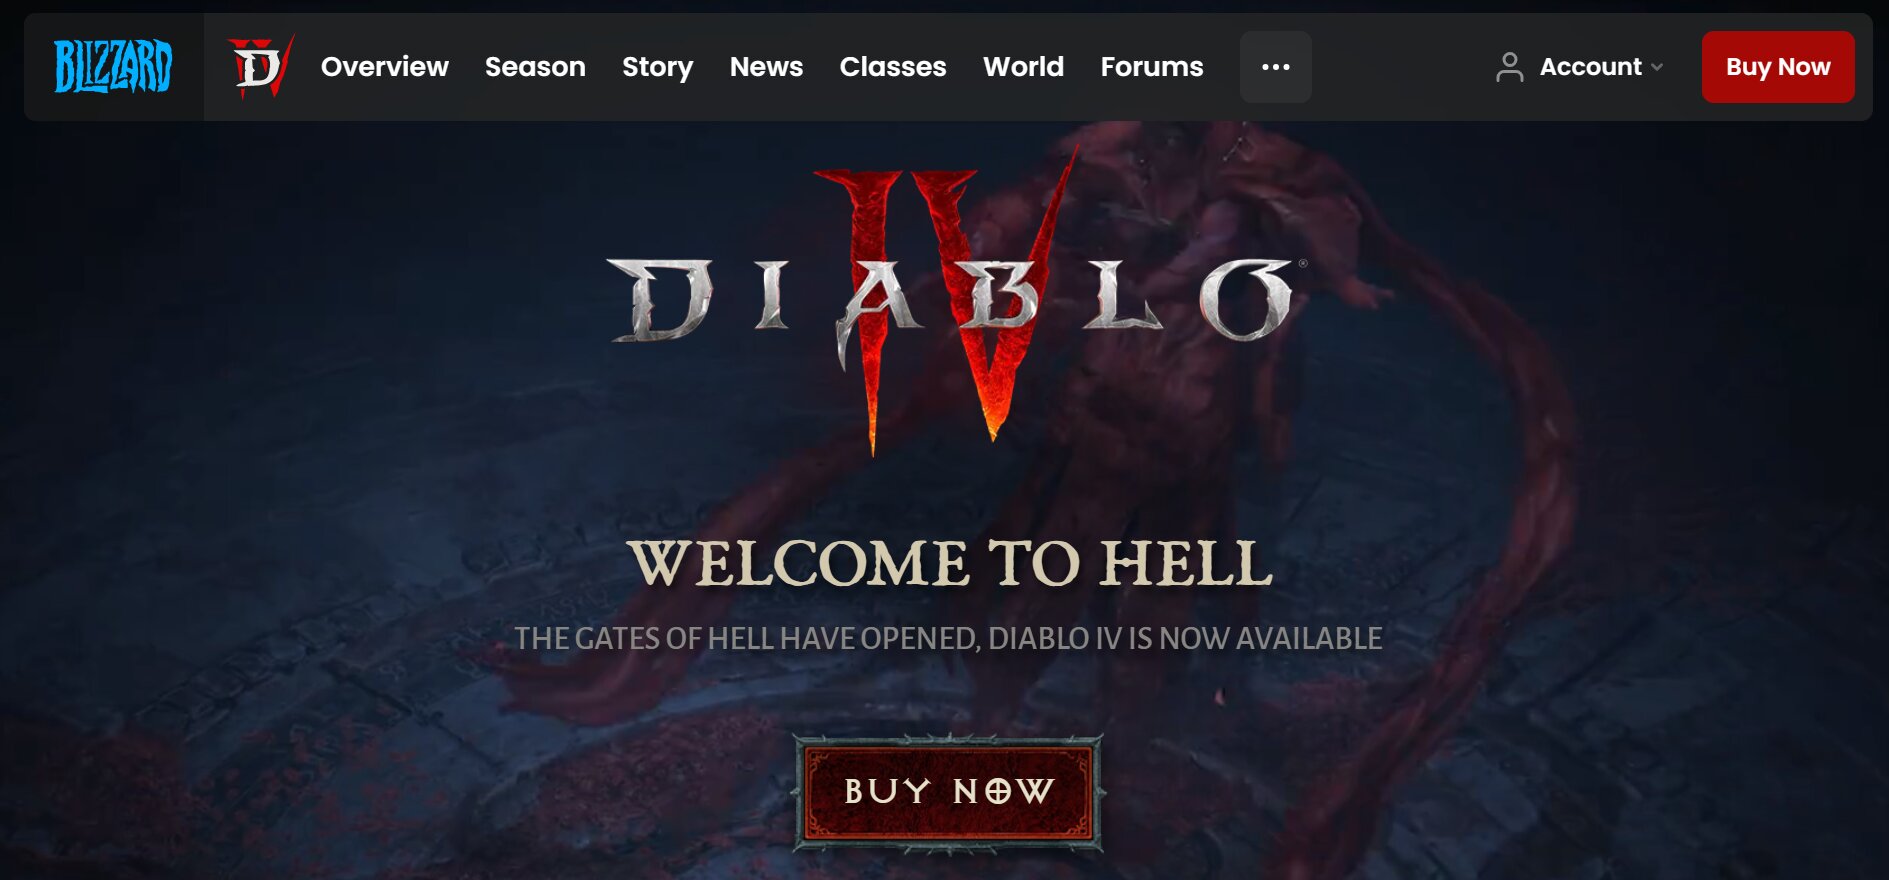 Diablo homepage